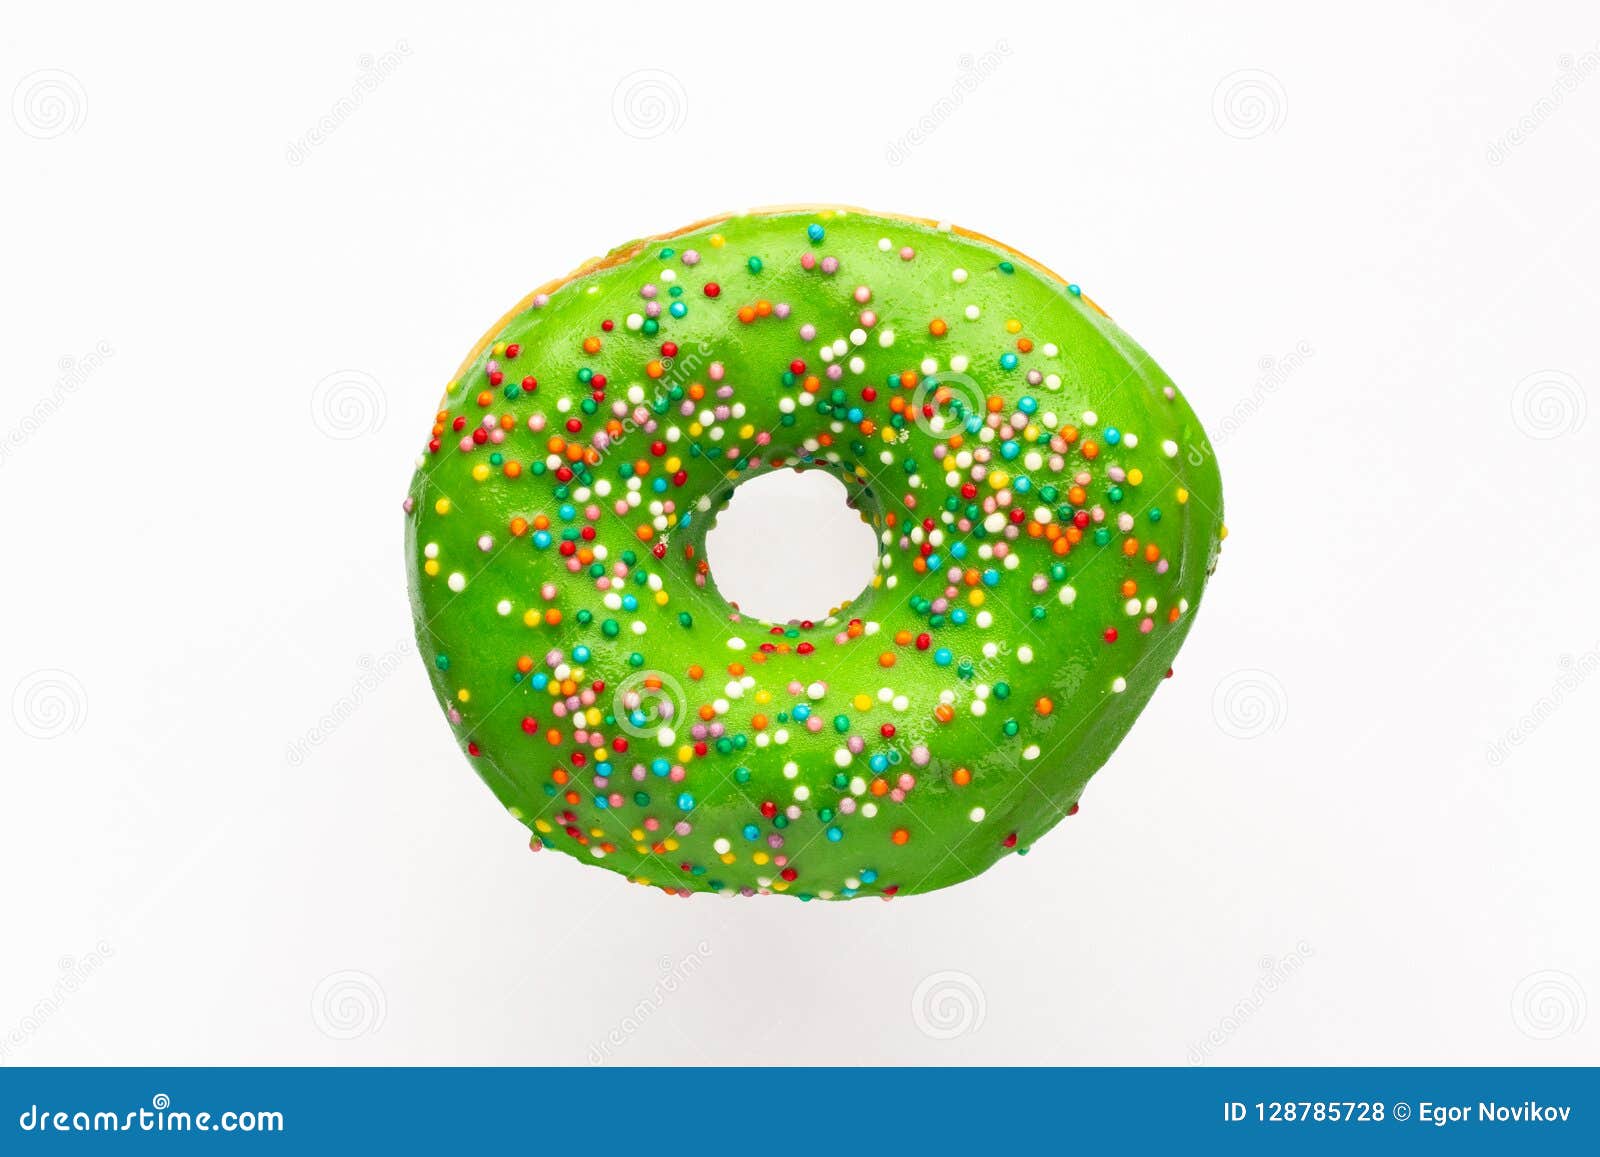 Донат зеленый. Зеленый пончик. Пончик с зеленой глазурью. Зеленый пончик на белом фоне. Зеленый пончик с зеленой посыпкой.